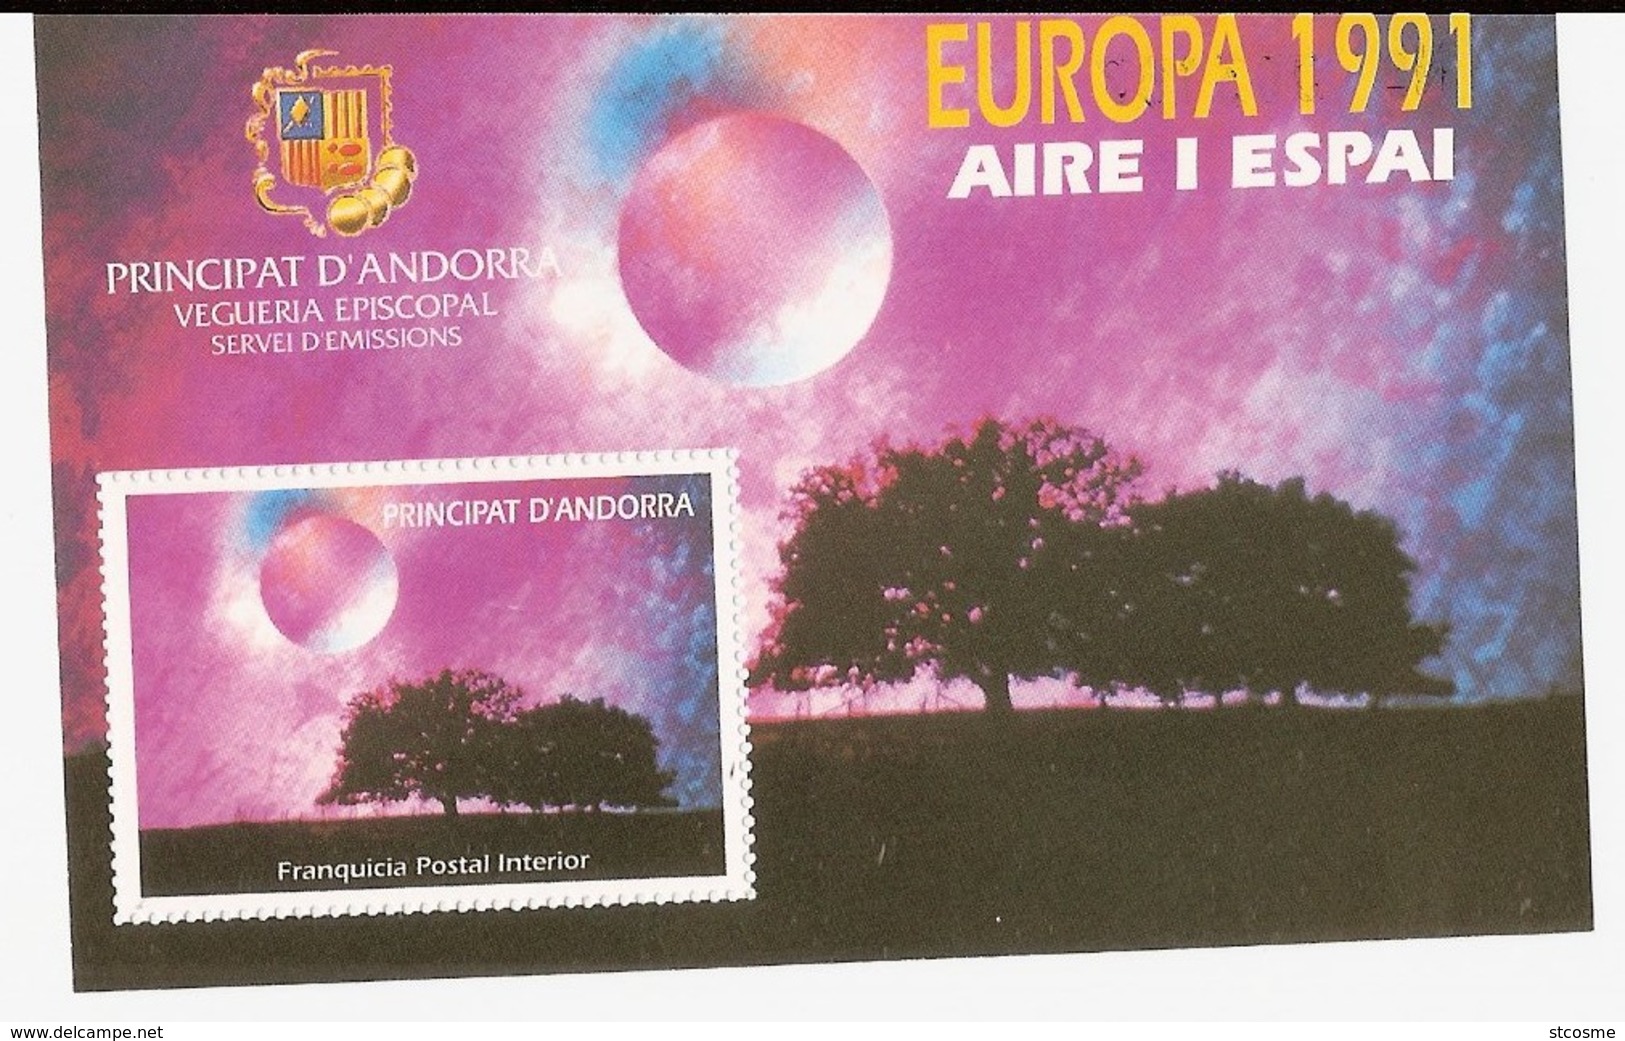 Viguerie D'Andorre - Andorra - Bloc Feuillet De 1991 - Europa 1991 Air Et Espace - Viguerie Episcopale